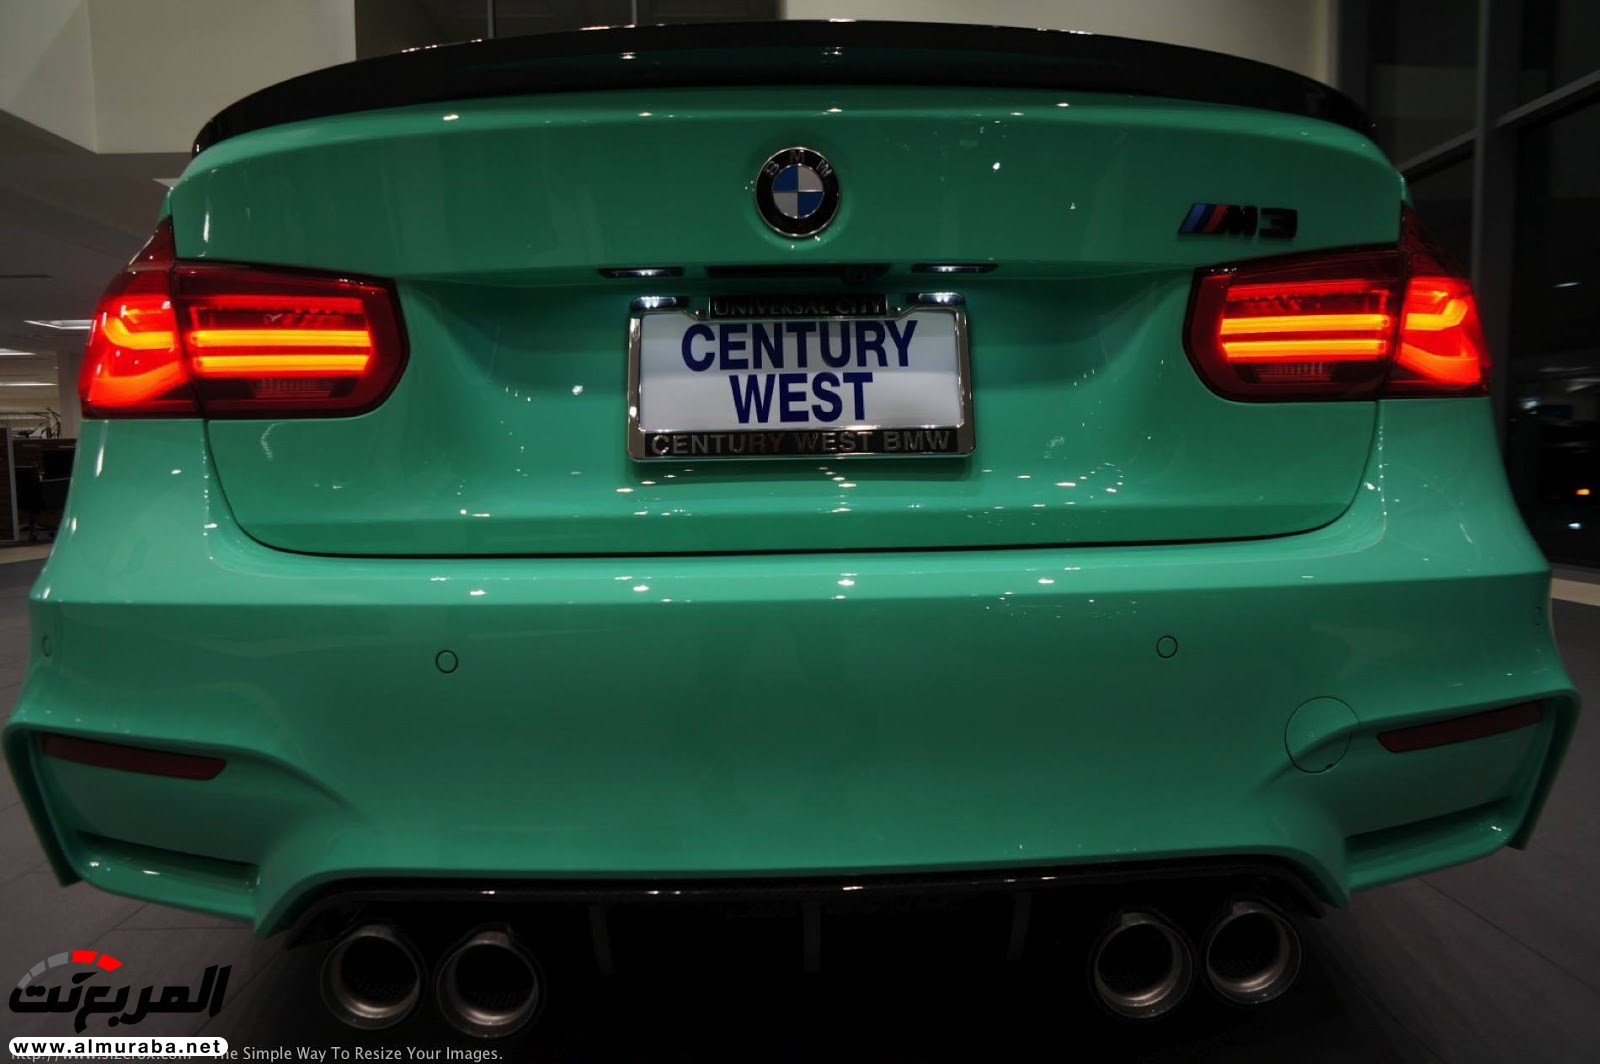 "بالصور" شاهد "بي إم دبليو" F80 M3 الخاصة بطلاء النعناع الأخضر BMW 96